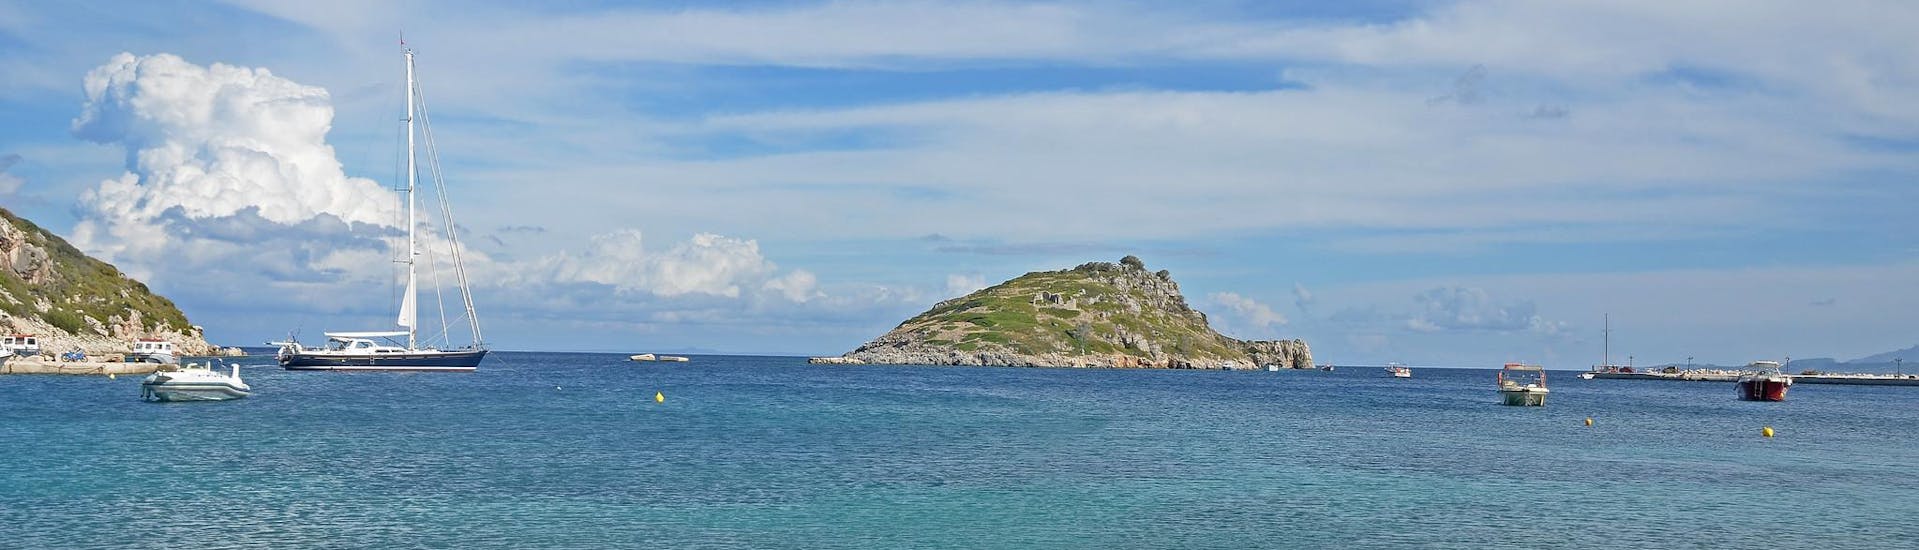 De haven van Agios Nikolaos in Zakynthos, een vertrekpunt voor boottochten op de Ionische Eilanden. 